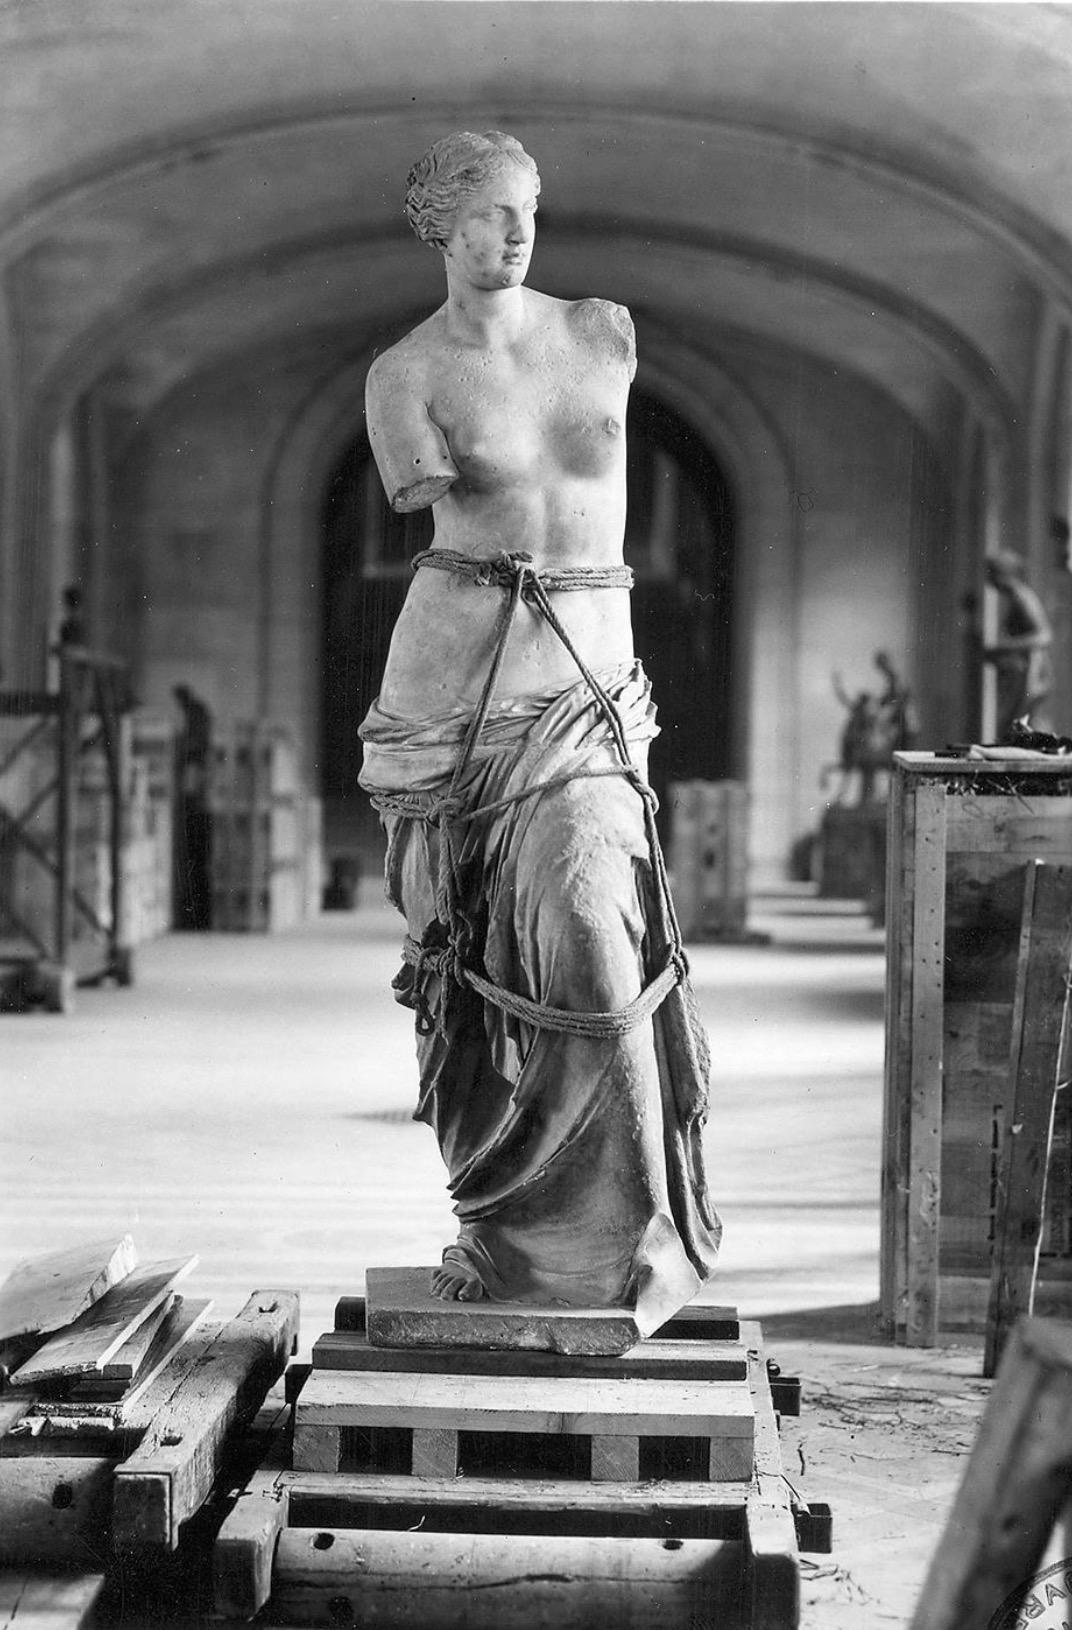 《断臂的维纳斯》,阿历山德罗斯,约公元前 150 年,法国卢浮宫博物馆